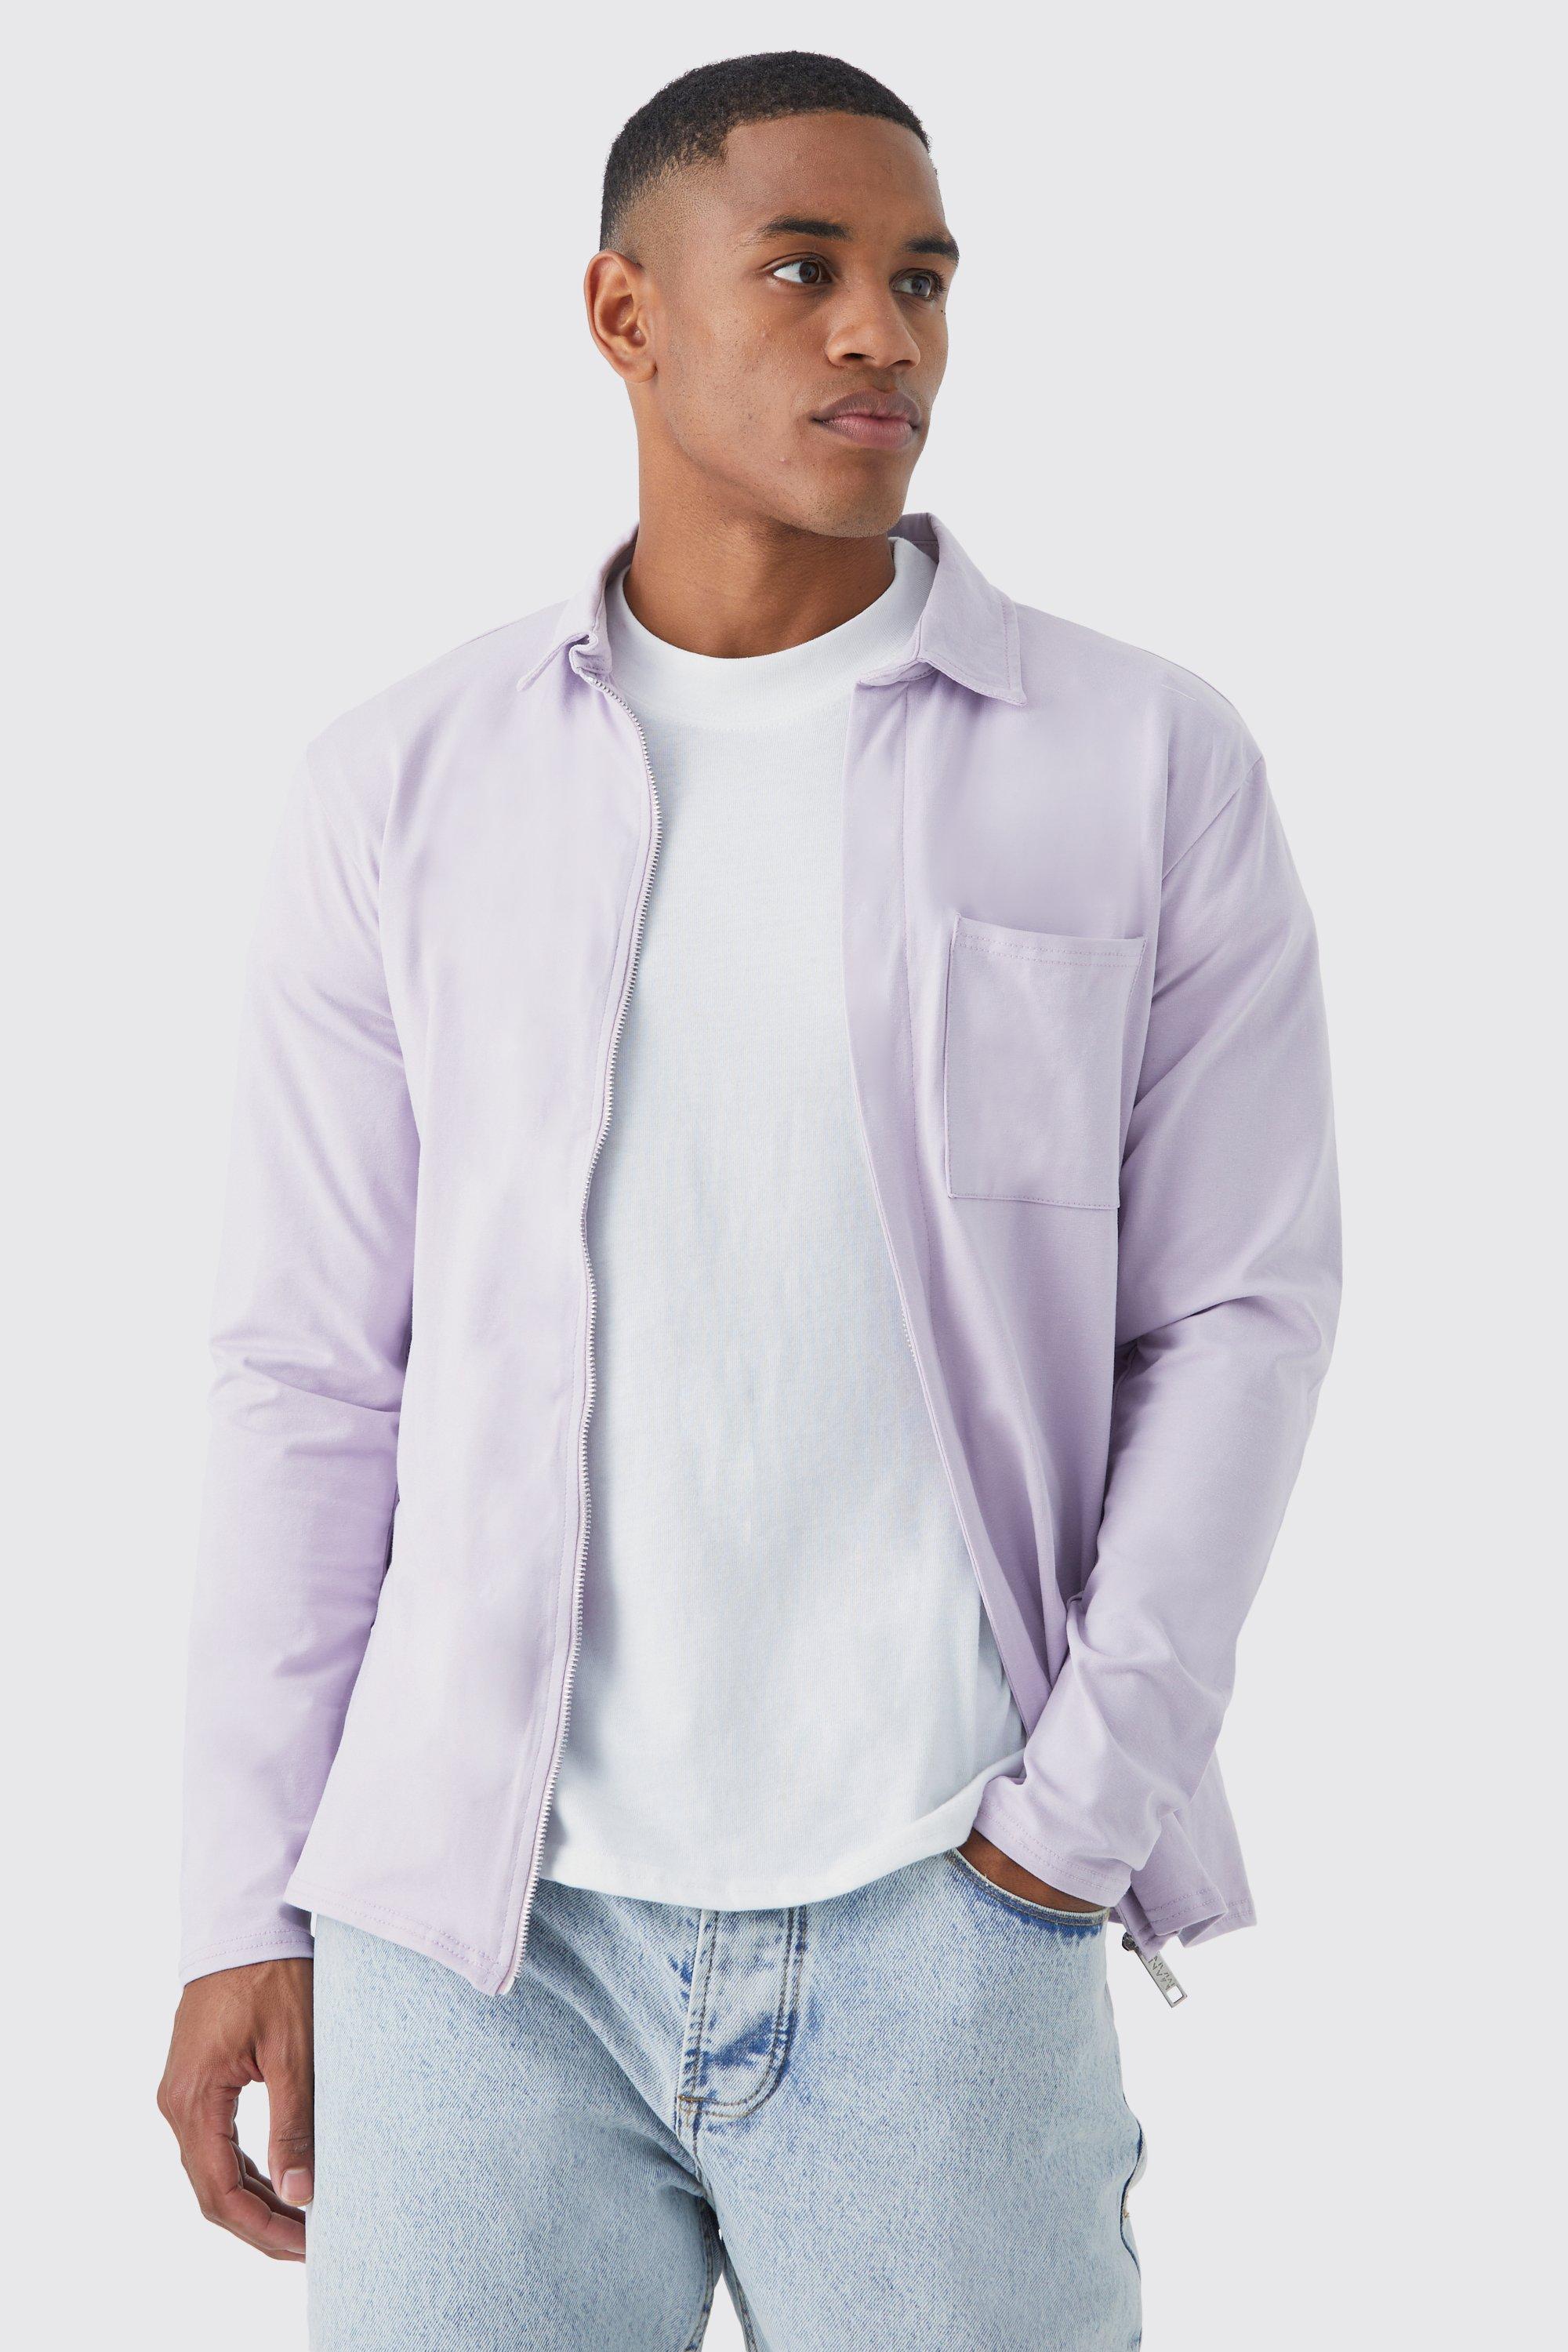 surchemise en jersey homme - violet - s, violet